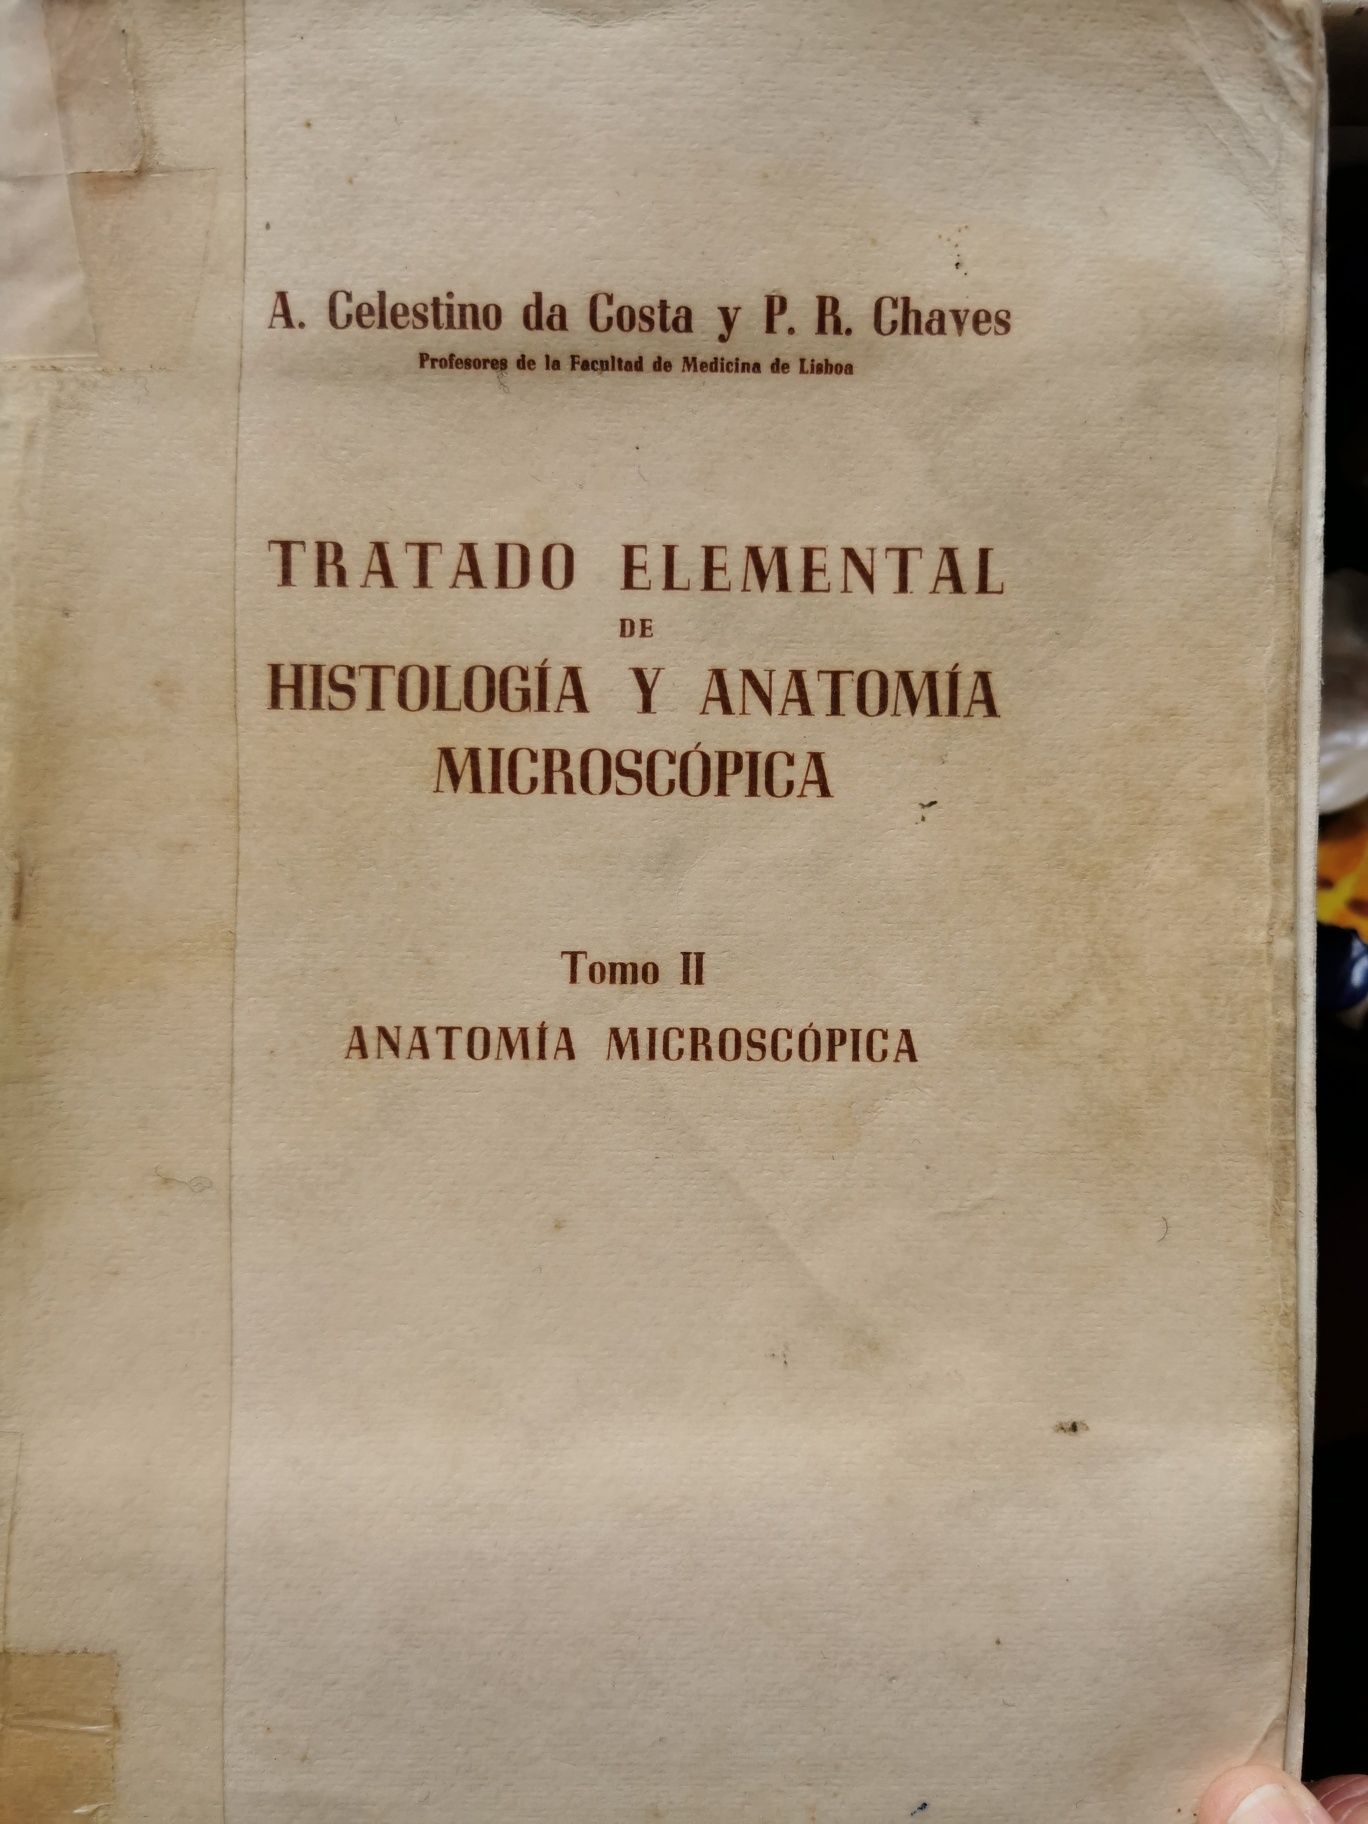 Livro antigo(71 anos) de Histologia e Anatomia Microscópica,